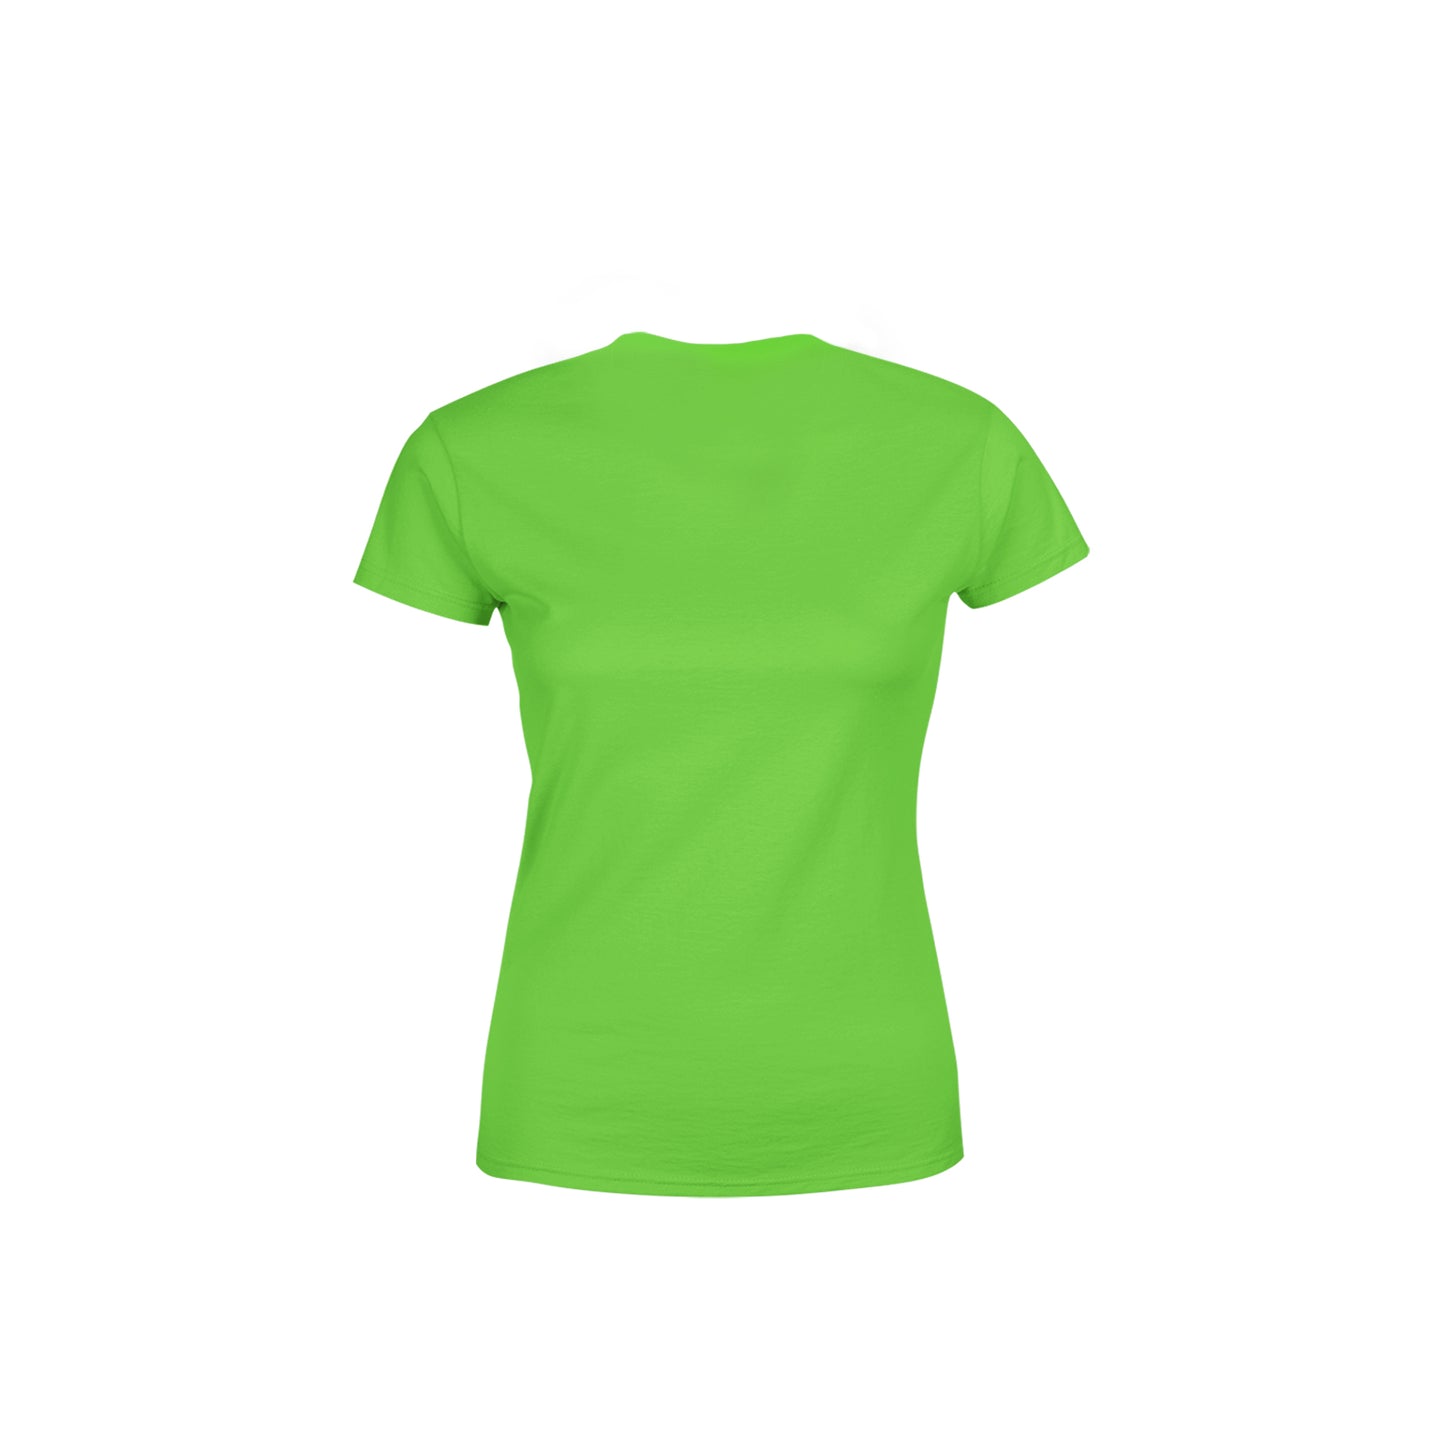 35 Number Women's T-Shirt (Liril Green)